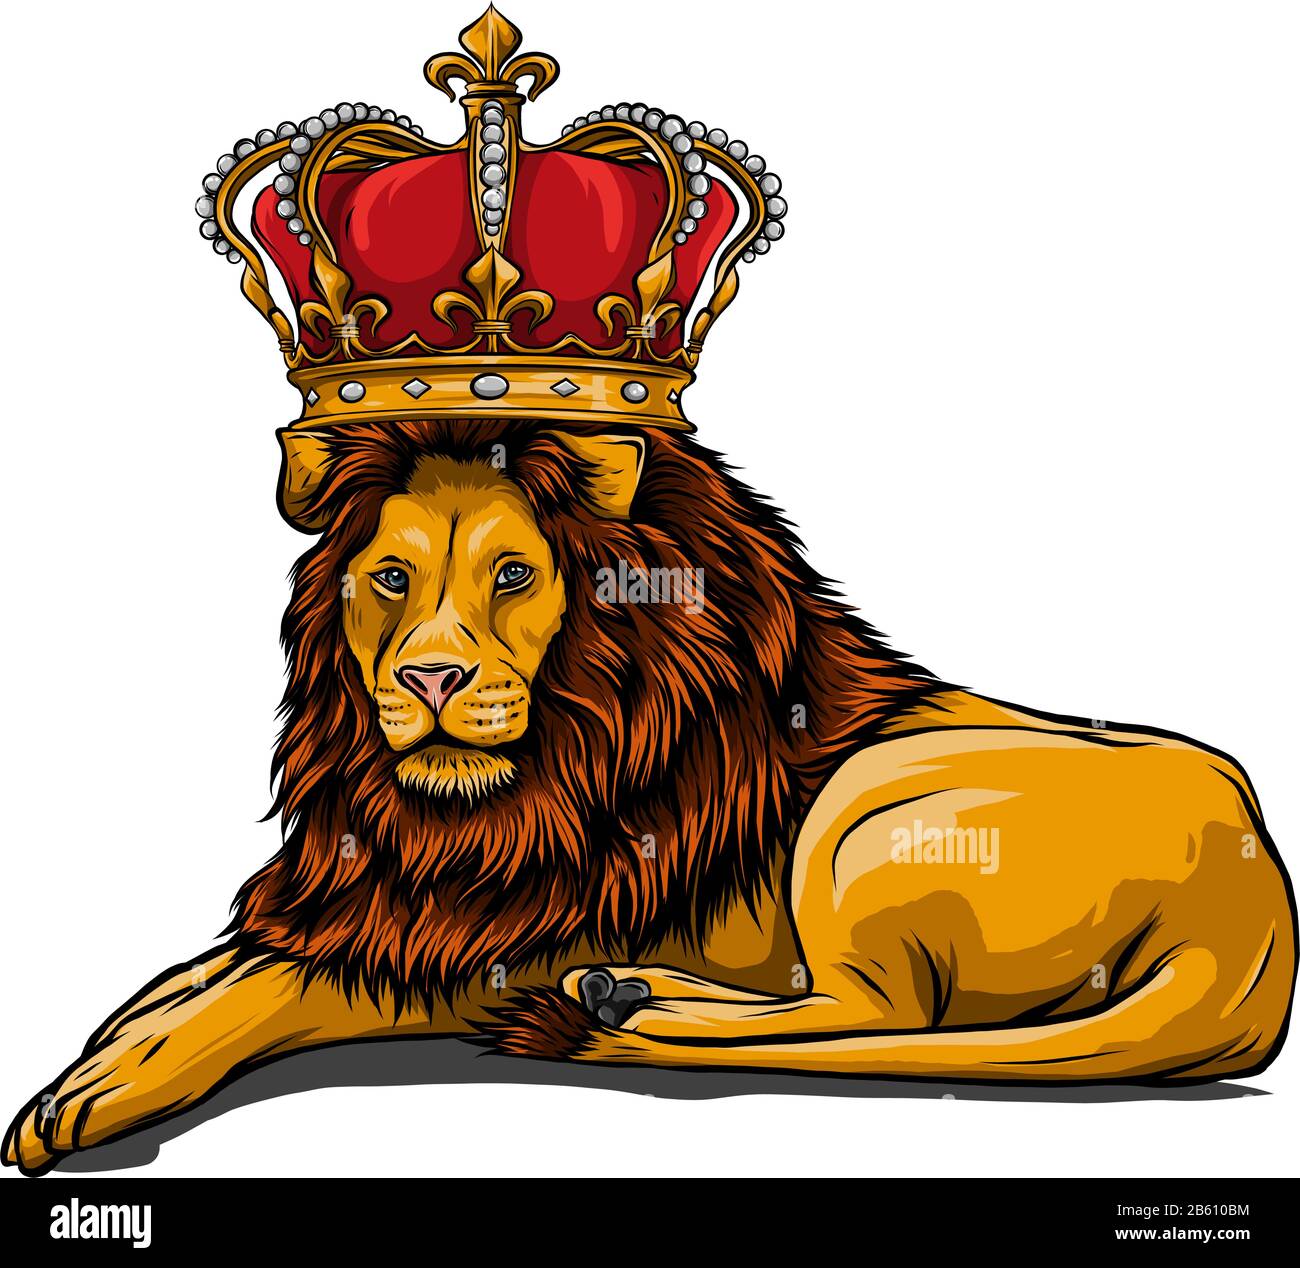 León real con corona - cabeza de rey animal con mane largo Imagen Vector de  stock - Alamy